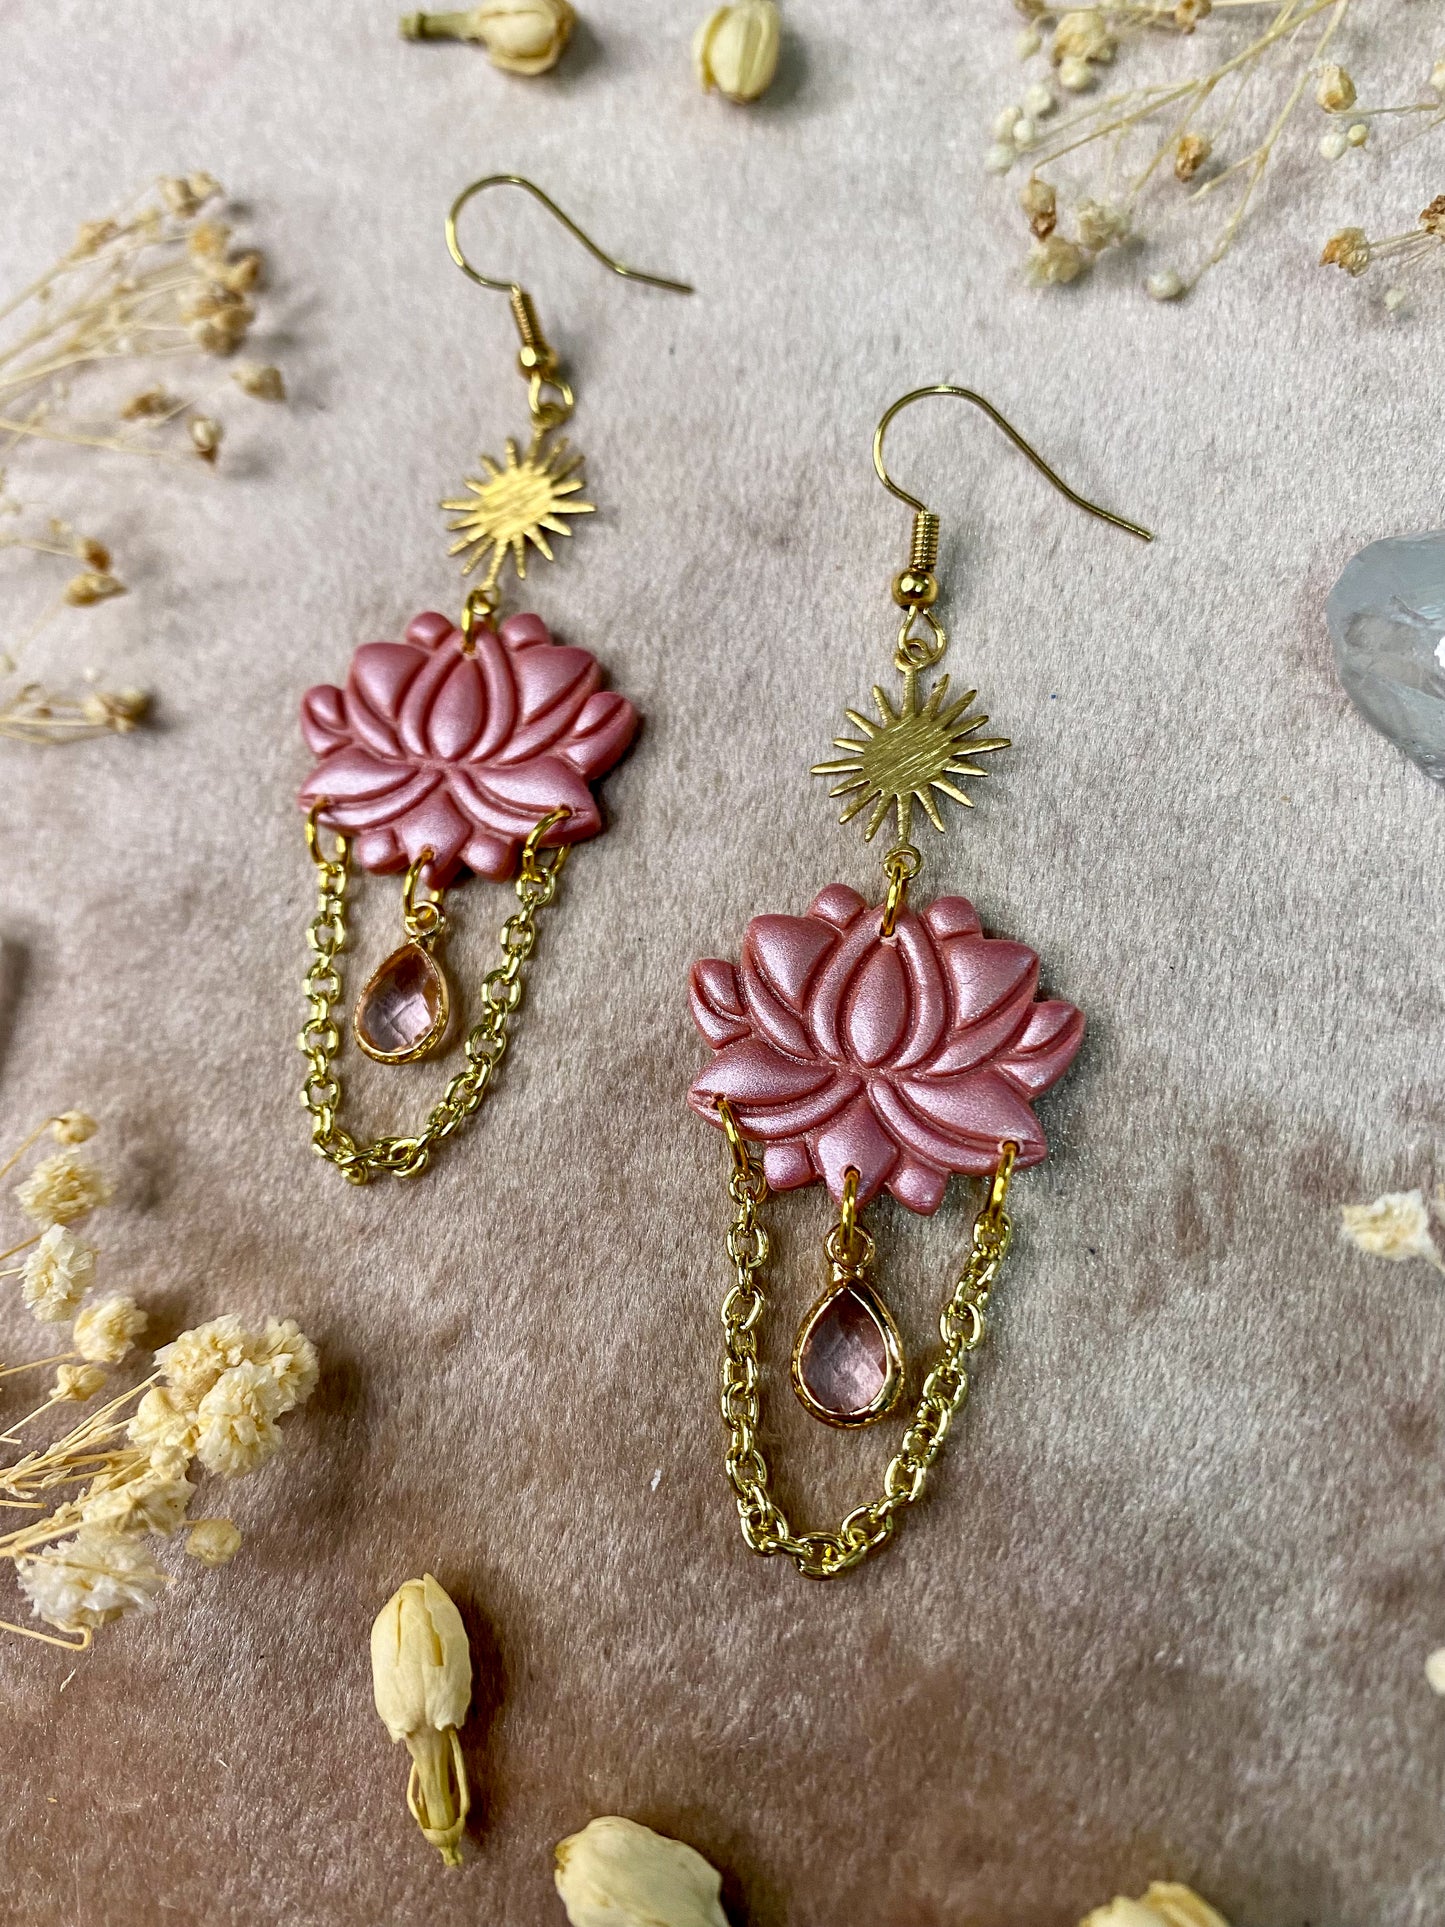 Pink Lotus Flower Earrings